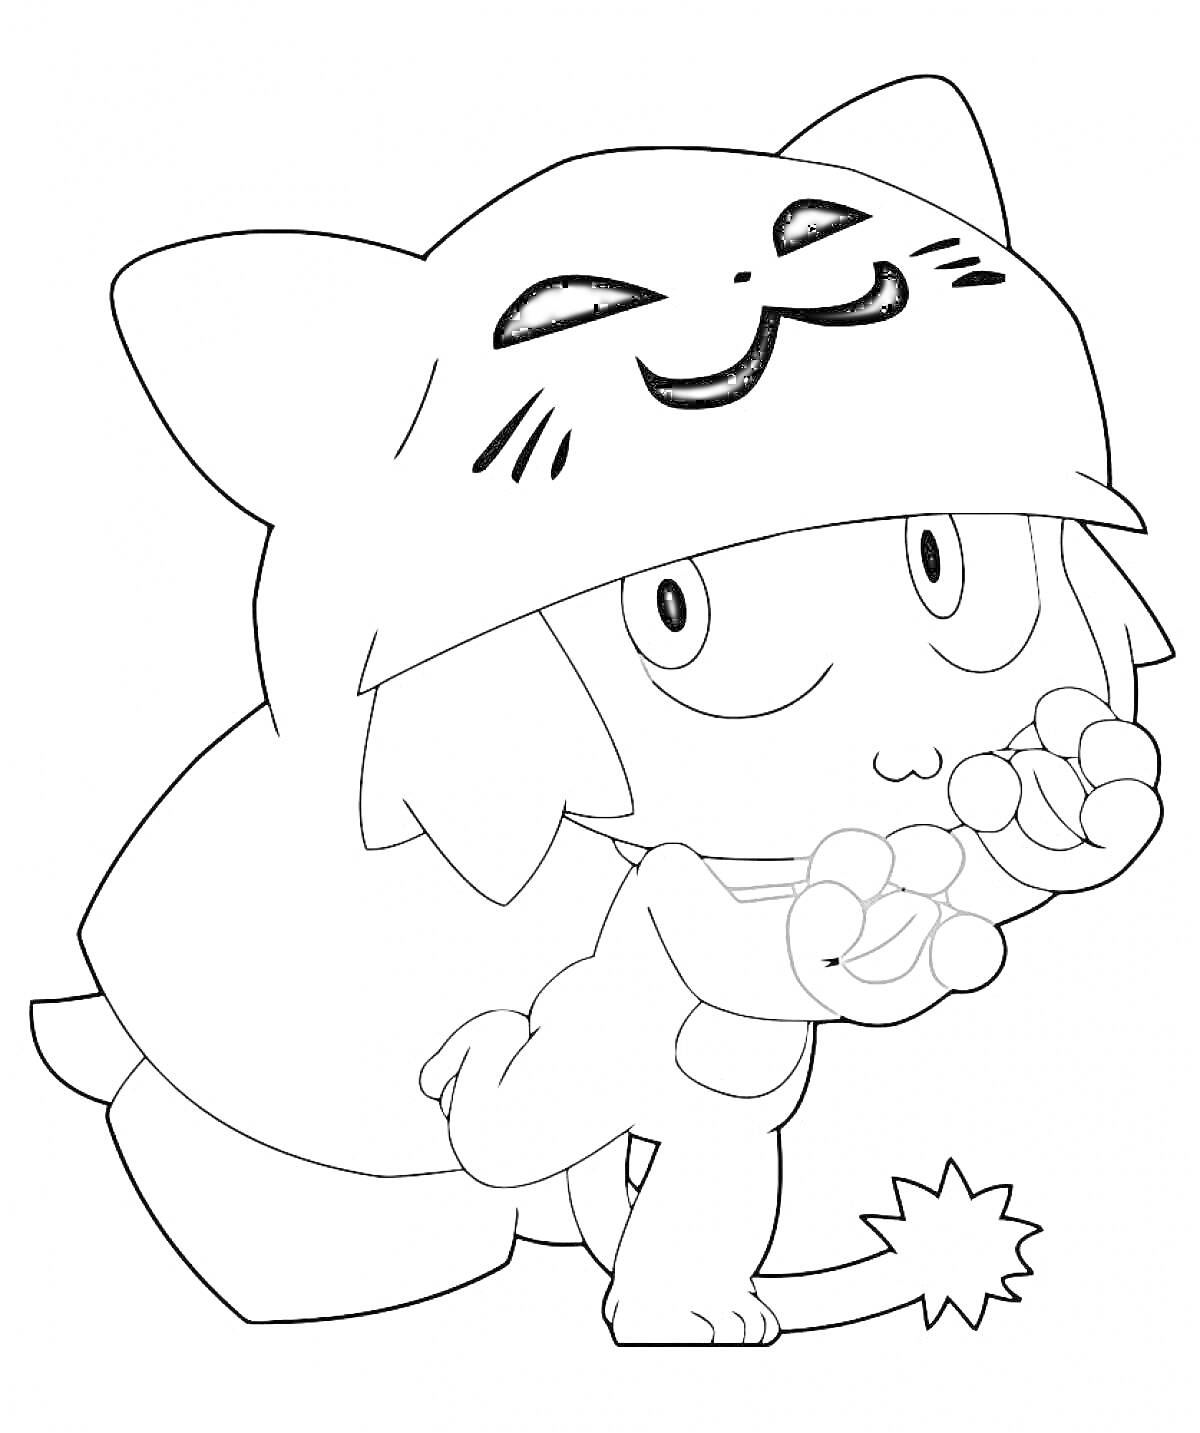 Раскраска Персонаж Вакфу в шапке-котёнке, делающий 